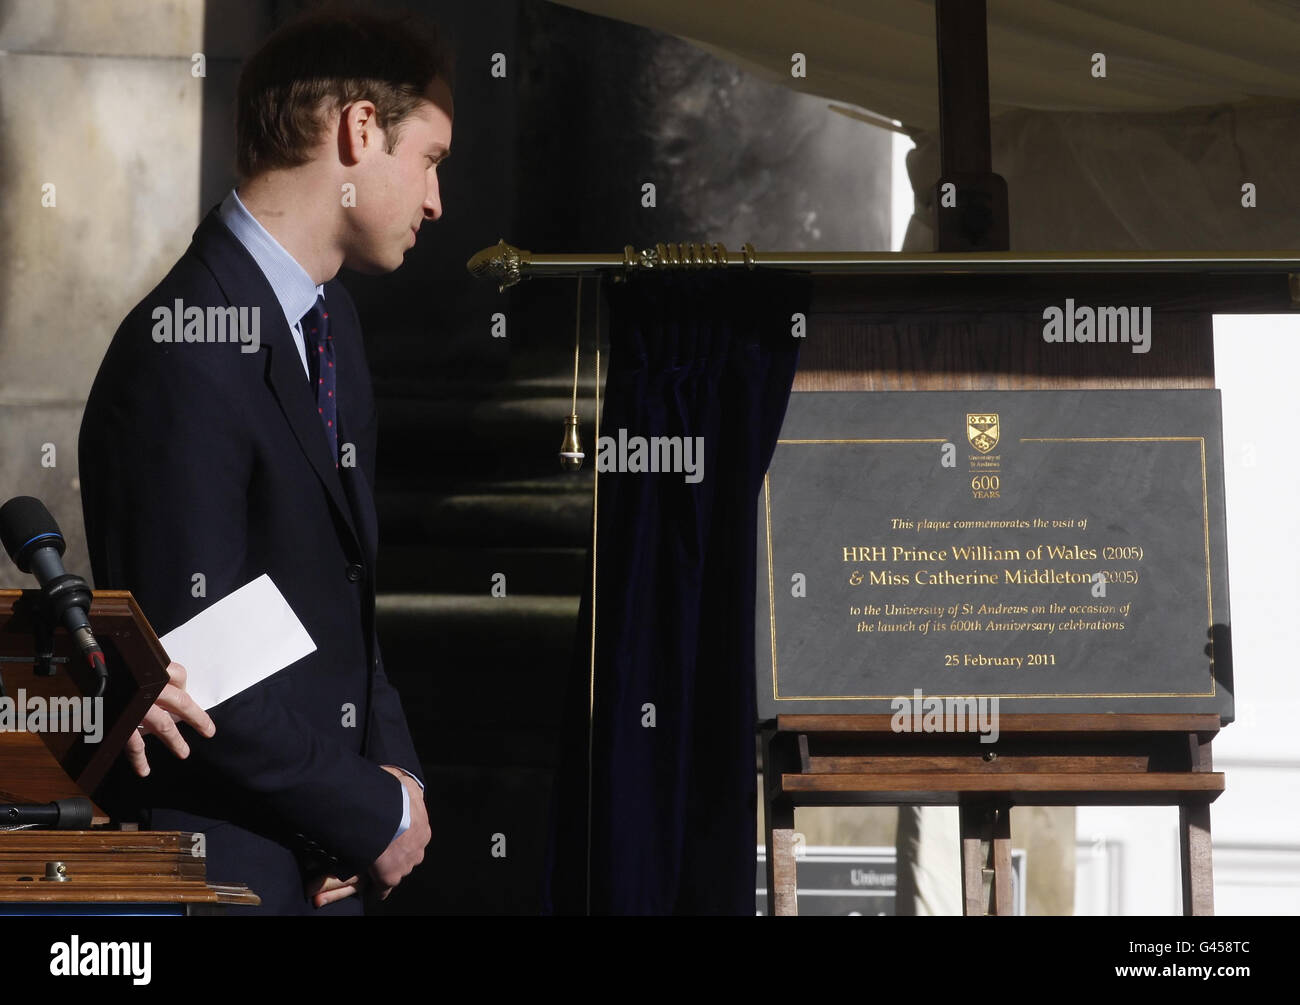 Le Prince William dévoile une plaque pour lancer les célébrations du 600e anniversaire à l'Université de St Andrews, lors d'une visite à l'Université avec Kate Middleton où ils se sont rencontrés pour la première fois. Banque D'Images